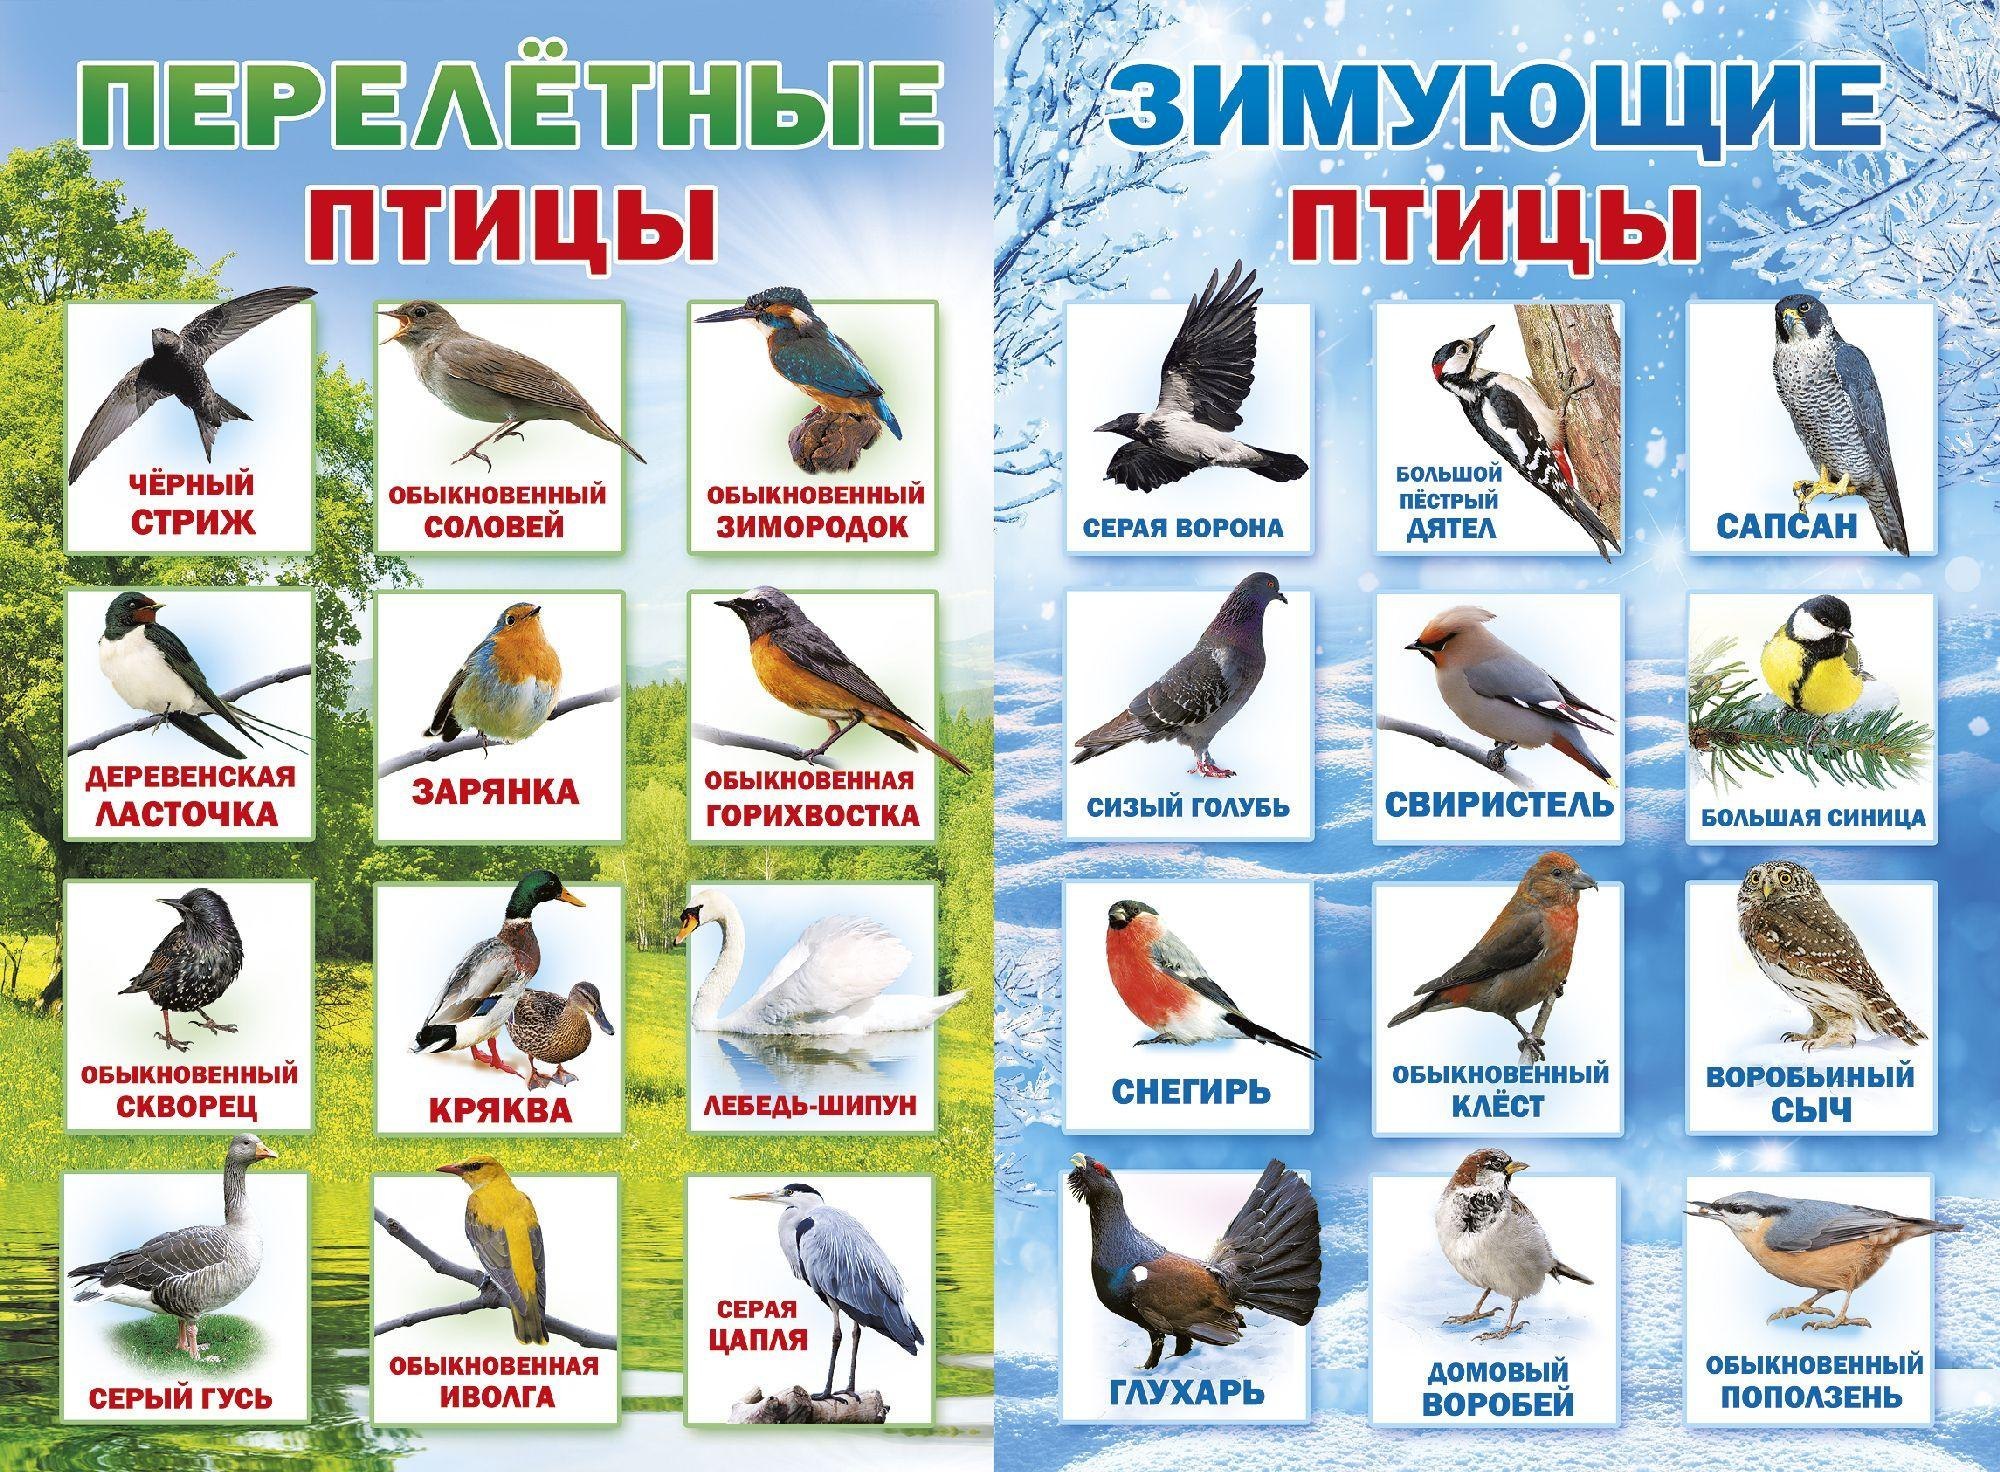 Перелетные птицы башкирии фото и названия